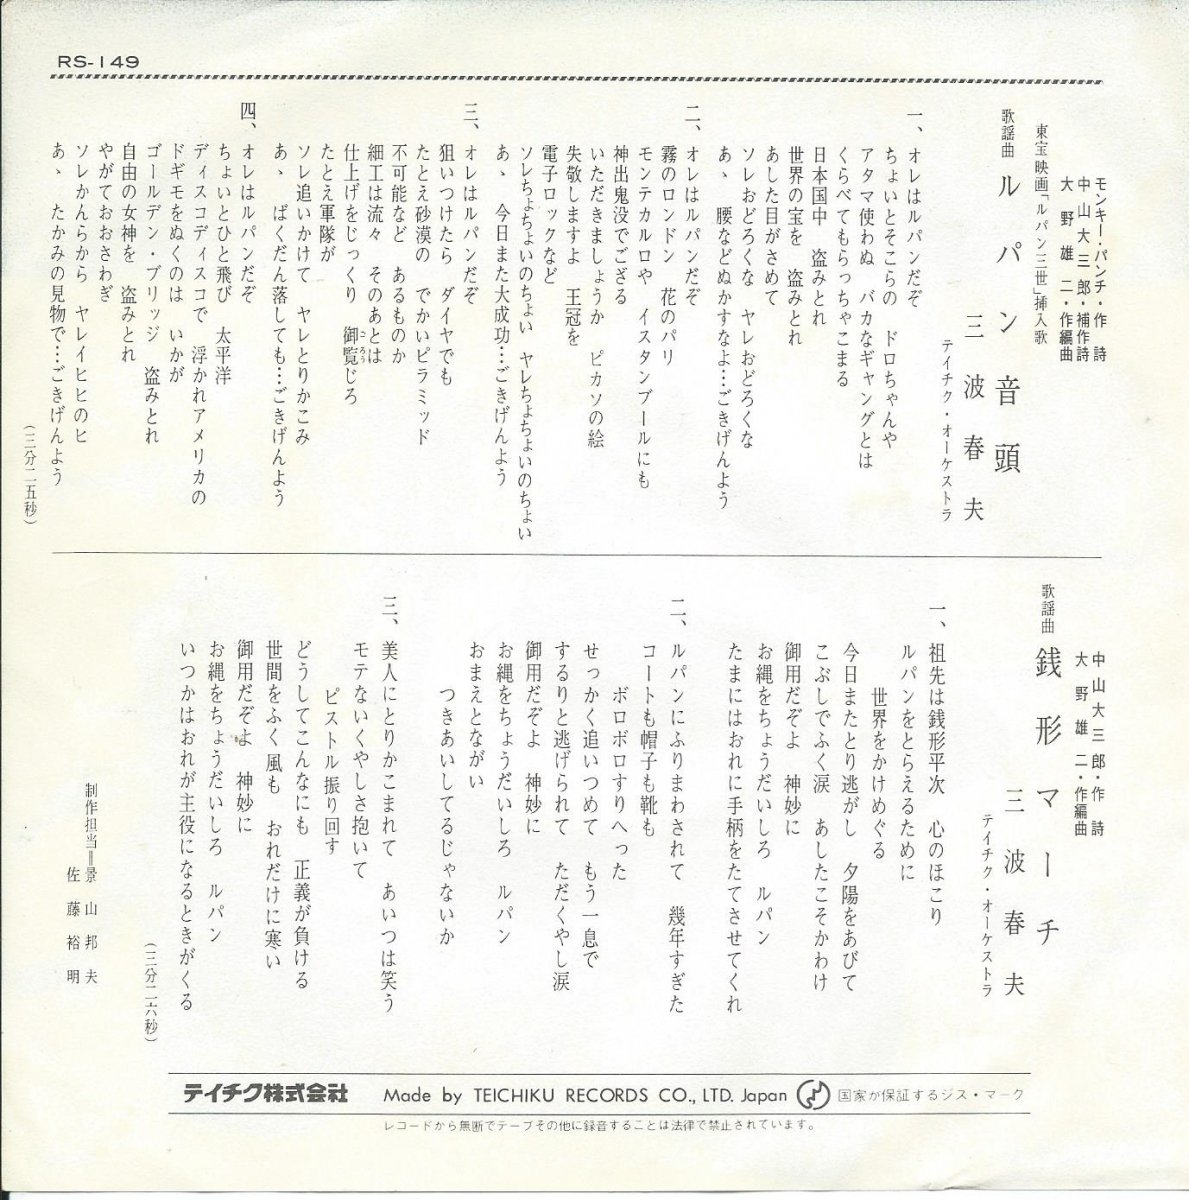 三波春夫 (大野雄二,テイチク・オーケストラ) / ルパン音頭 / 銭形 